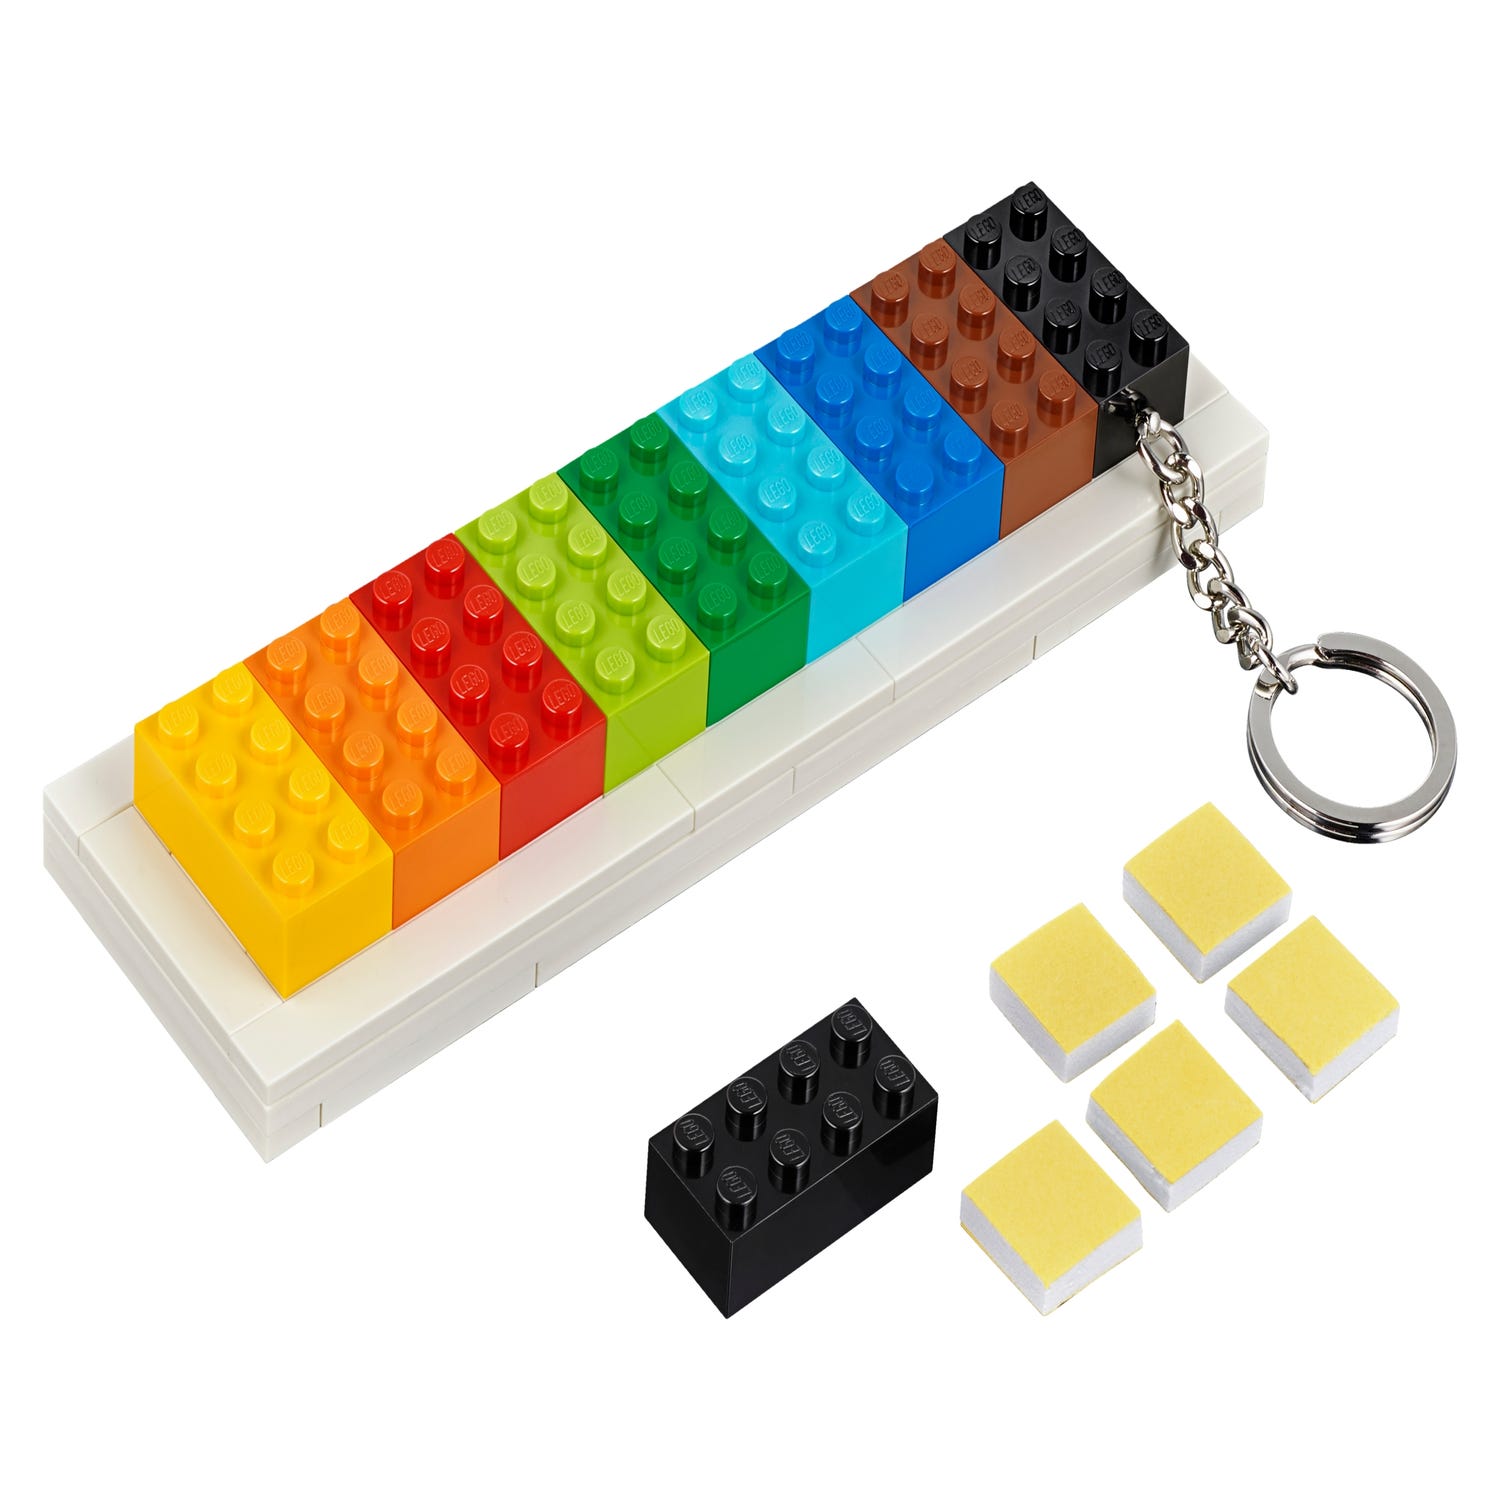 LEGOÂ® Key Hanger 853913 | Other | Buy online at the Official LEGOÂ® Shop US